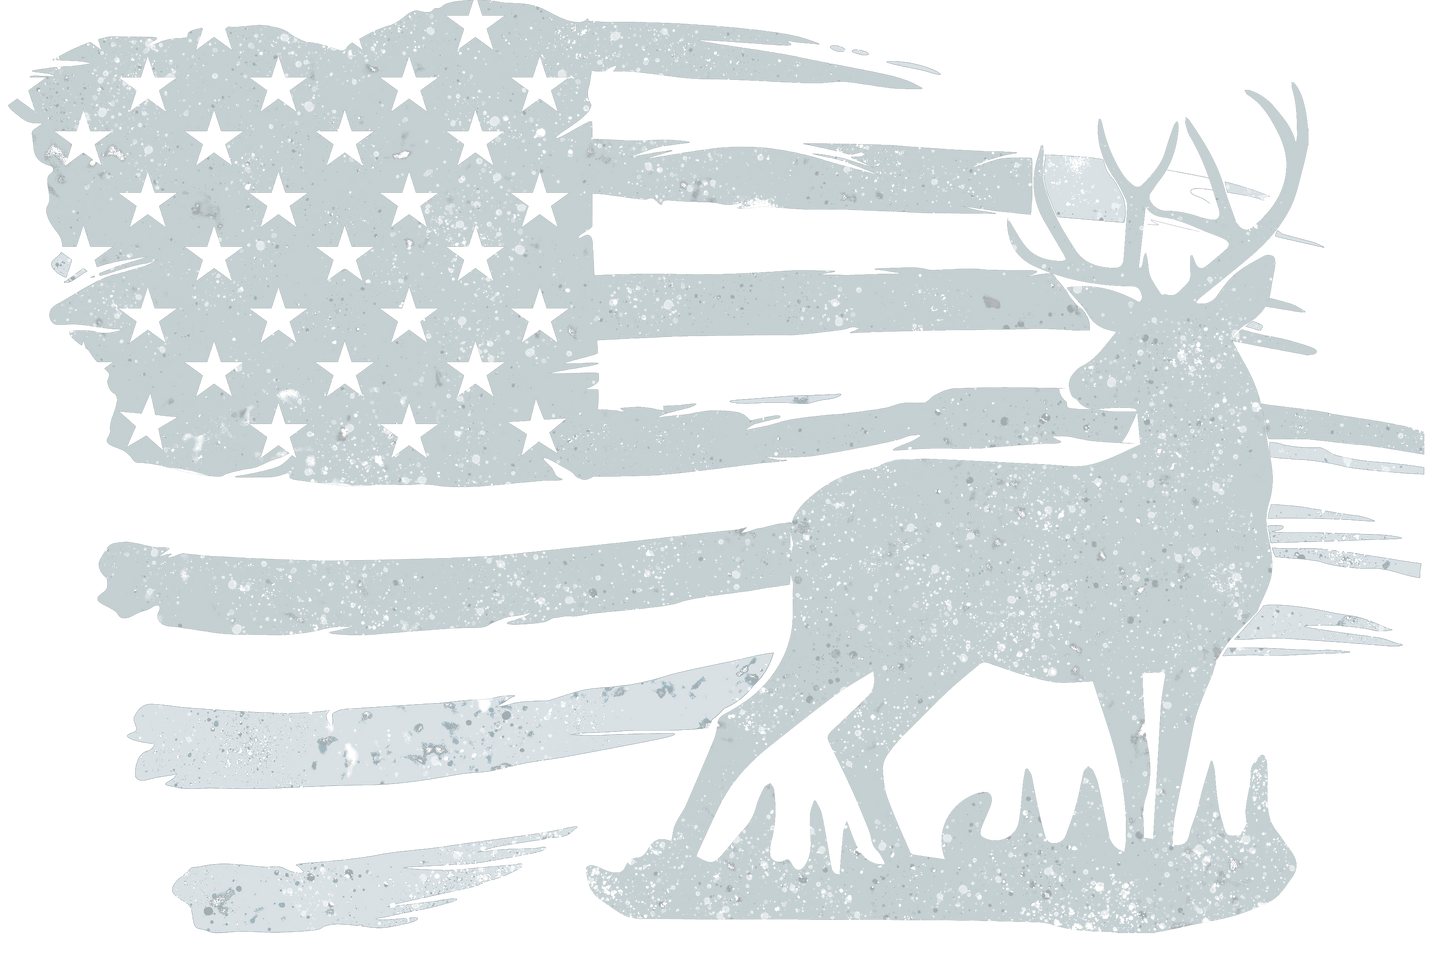 Heat Press Transfer Design - Deer and Flag, Hunting, Grunge Design Transparent Backgound